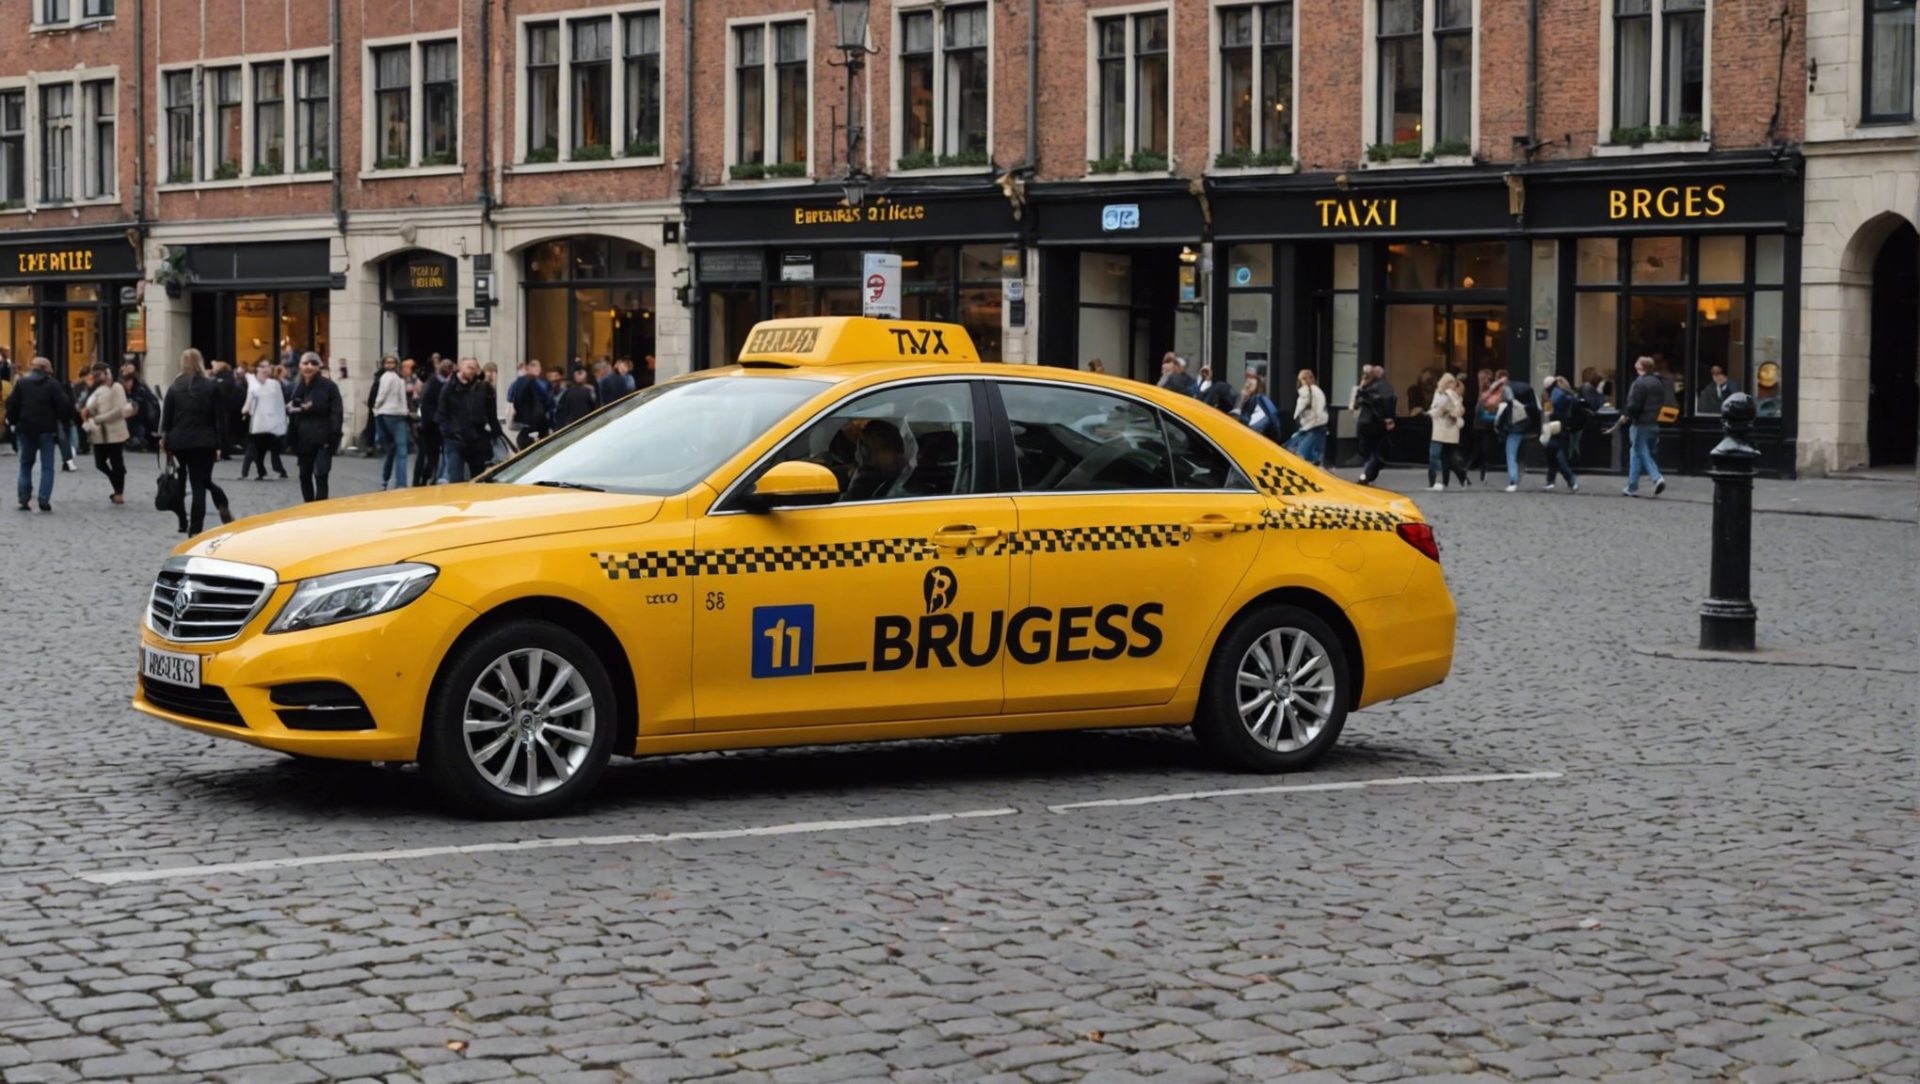 découvrez comment se déplacer en taxi à bruges et profitez d'un transport confortable et pratique dans cette ville magnifique de belgique.